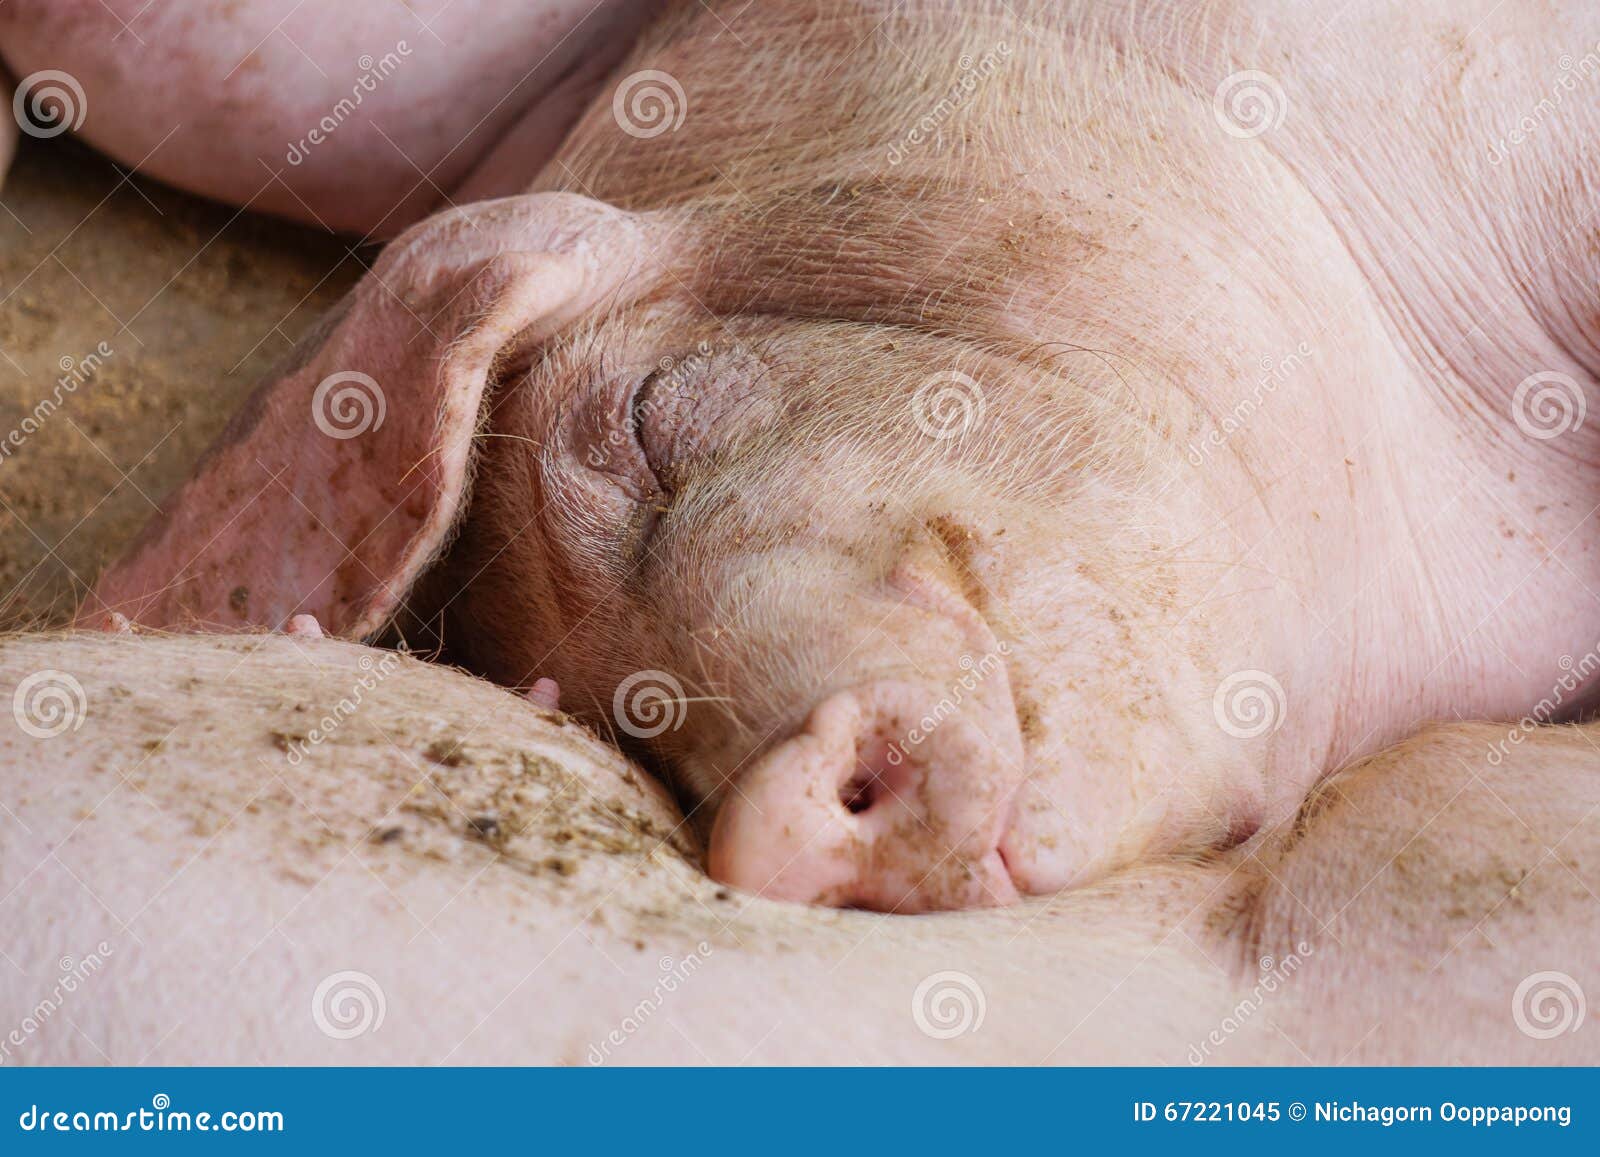 Видеть во сне маленького поросенка. Сонный поросенок. Спящие свиньи.